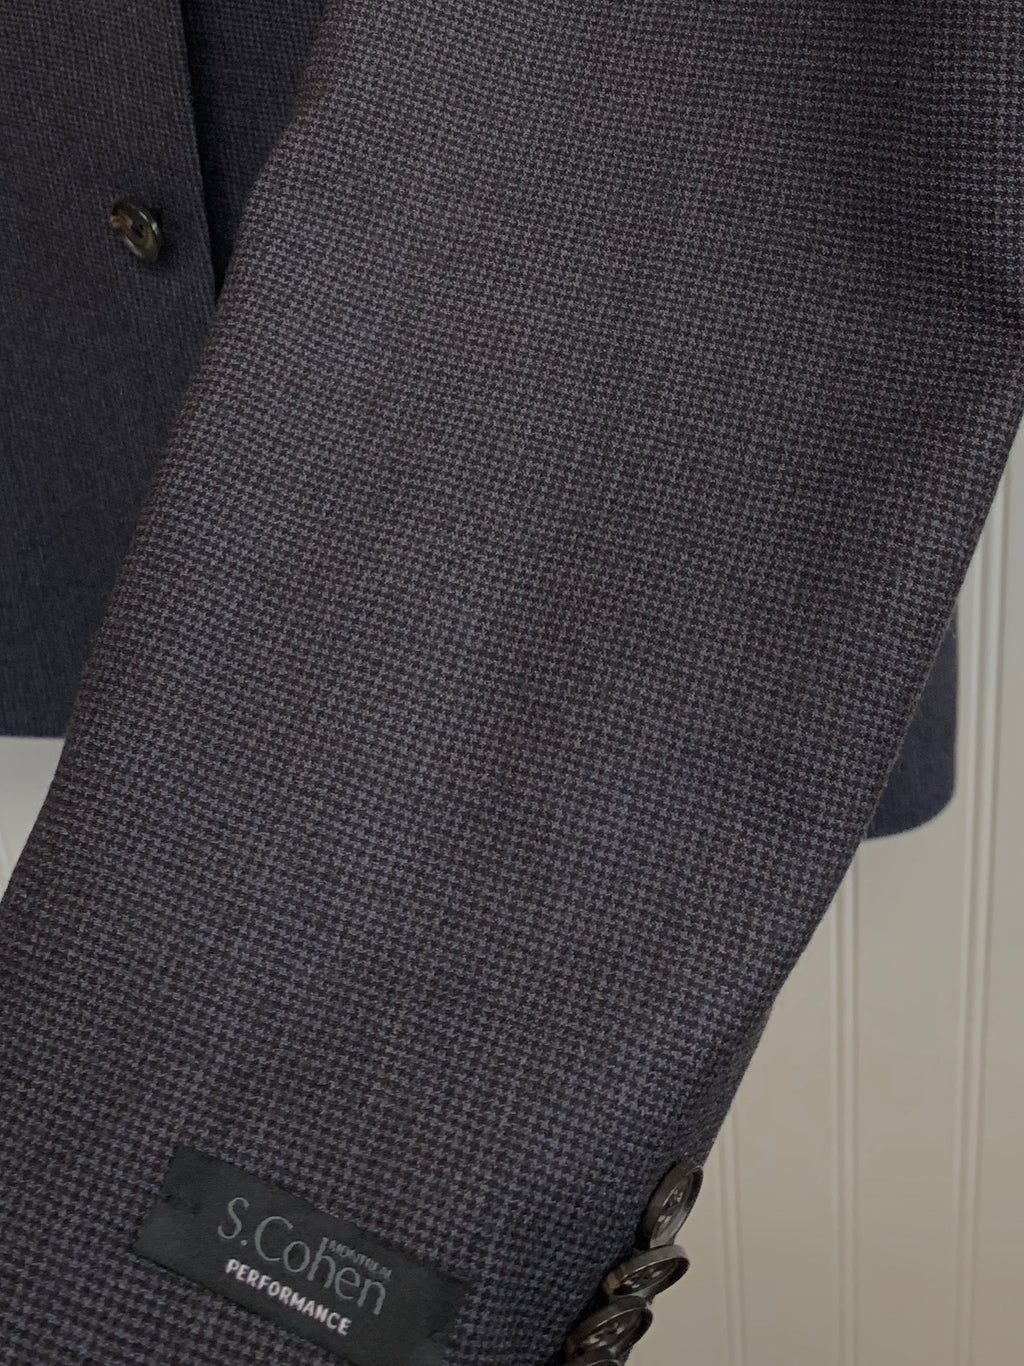 S. Cohen Performance Wool Suit- 89-1145 (Black/Blue Tweed)